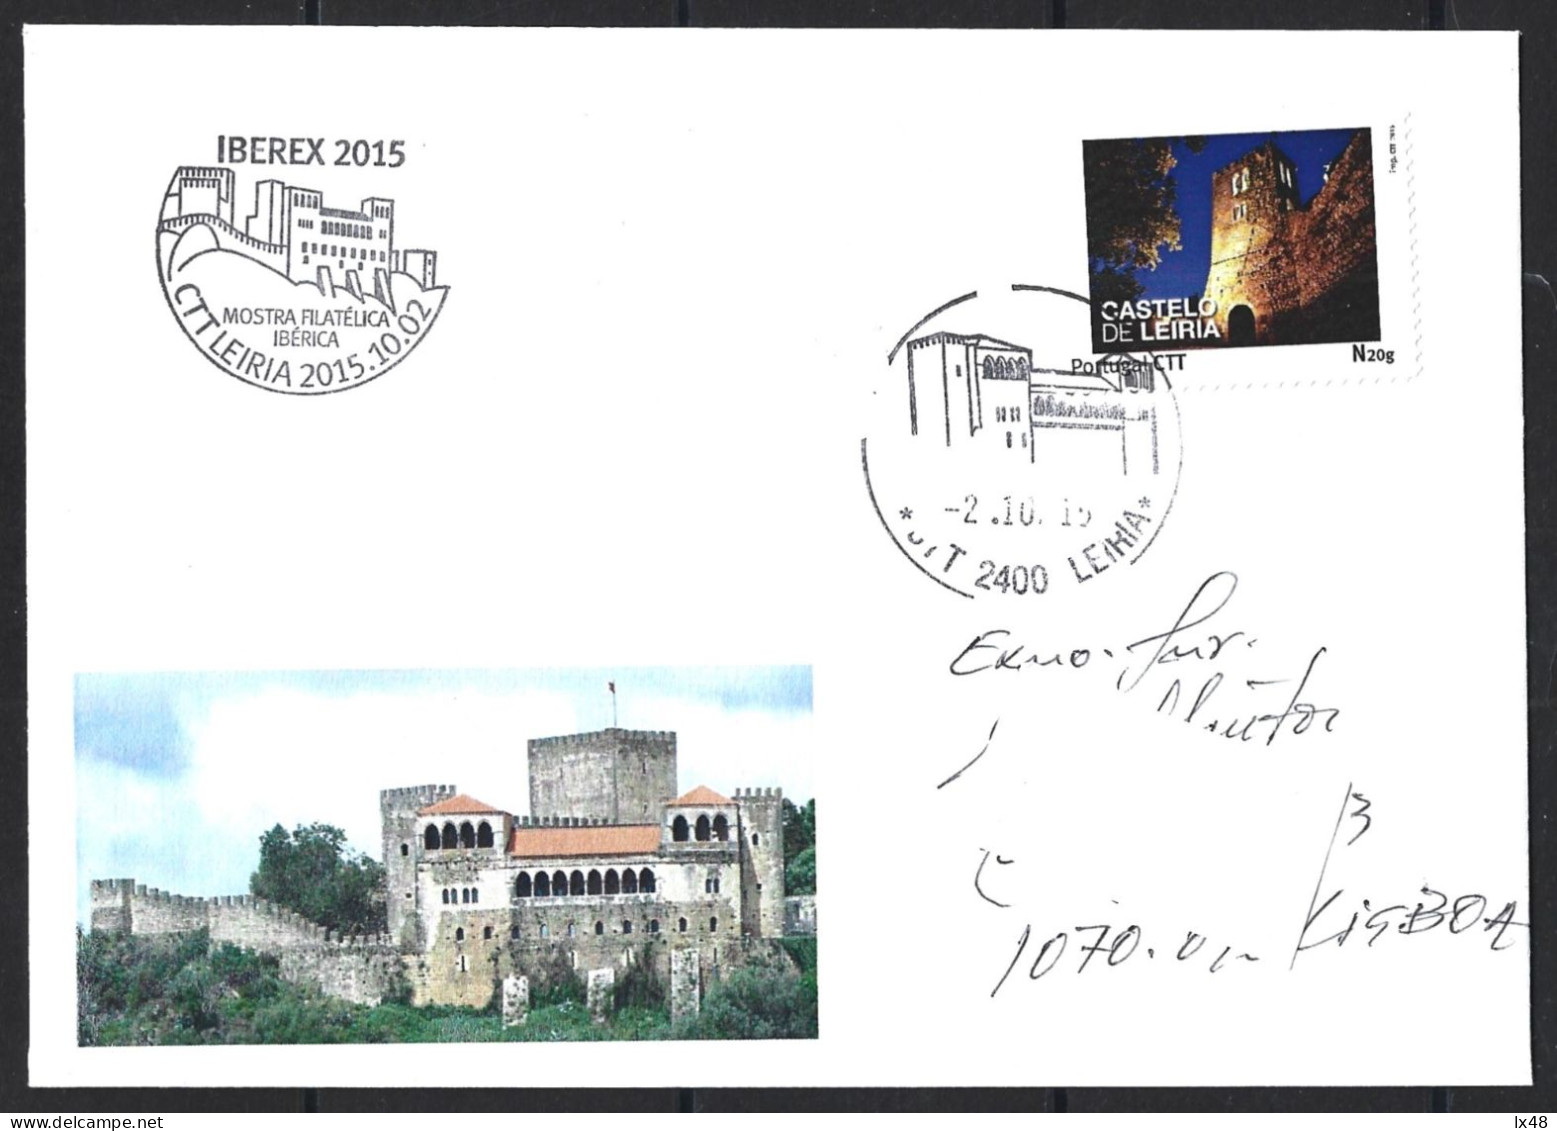 Castelo De Leiria. Envelope Circulado Com Stamp Personalizado E Obliteração Do Castelo De Leiria 2015. Leiria Castle. Ci - Lettres & Documents